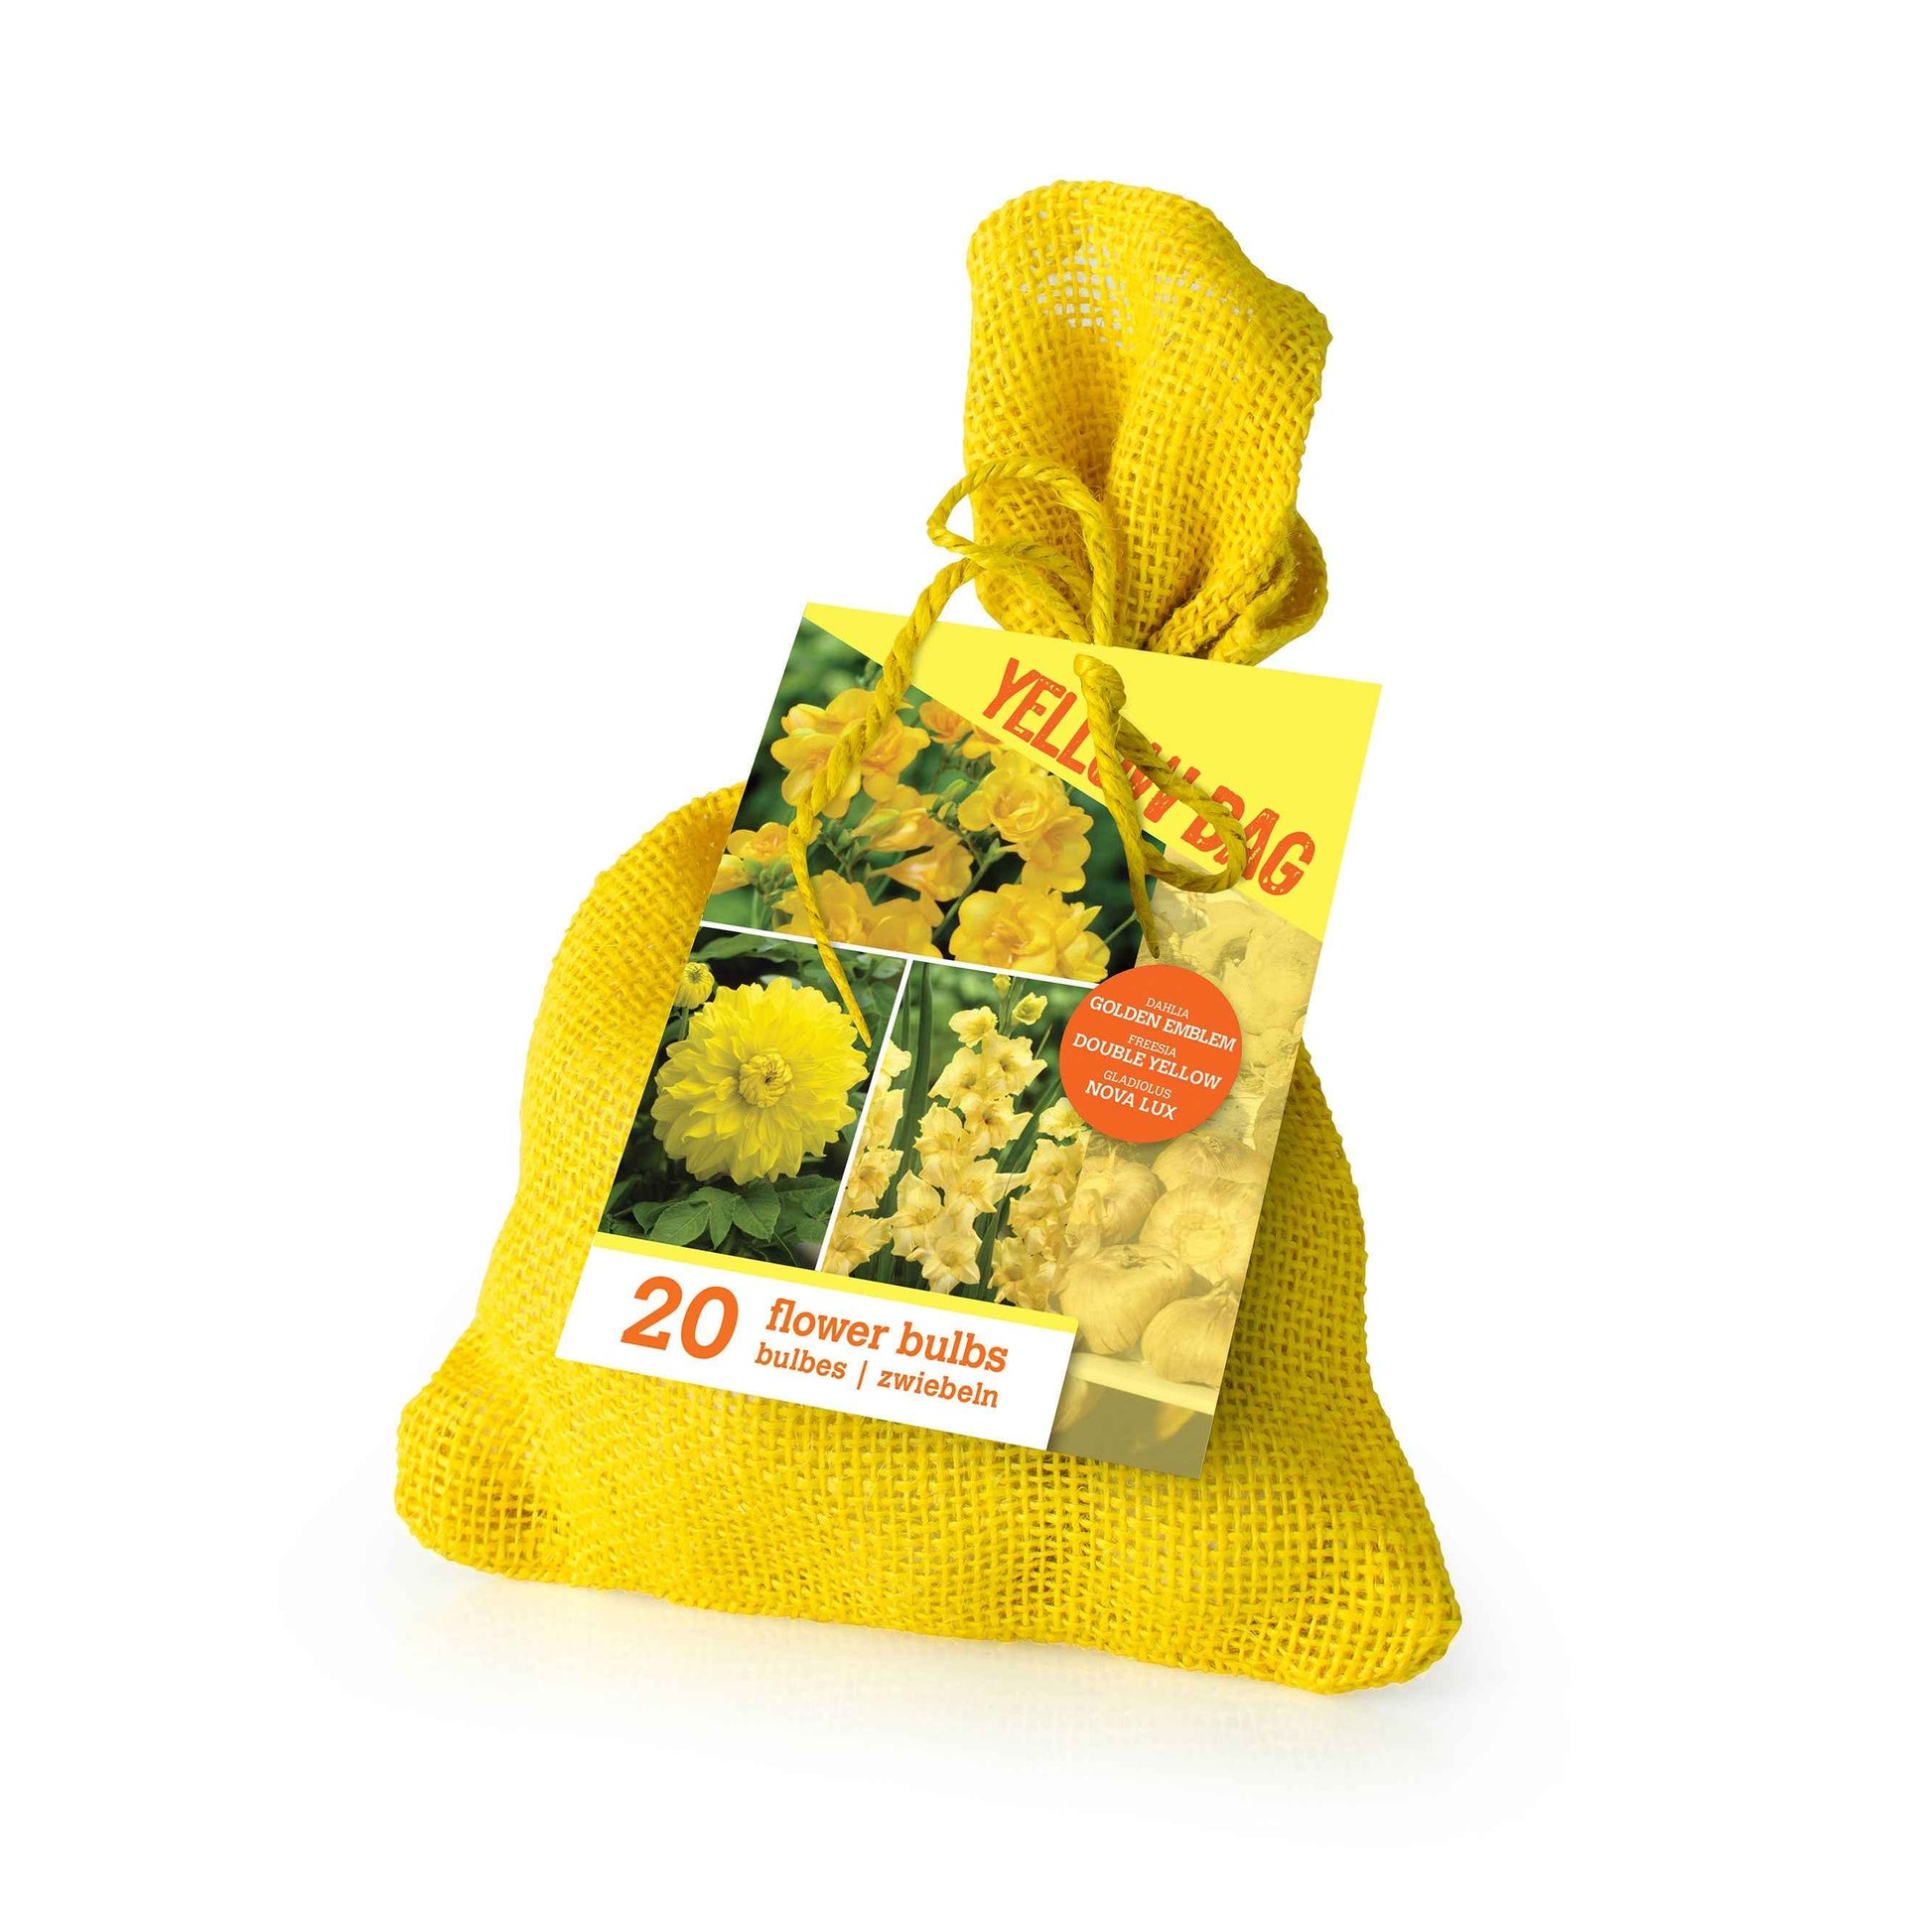 20x Bulbes de fleurs - Mélange 'The Yellow Bag' Jaune - Bulbes d'été